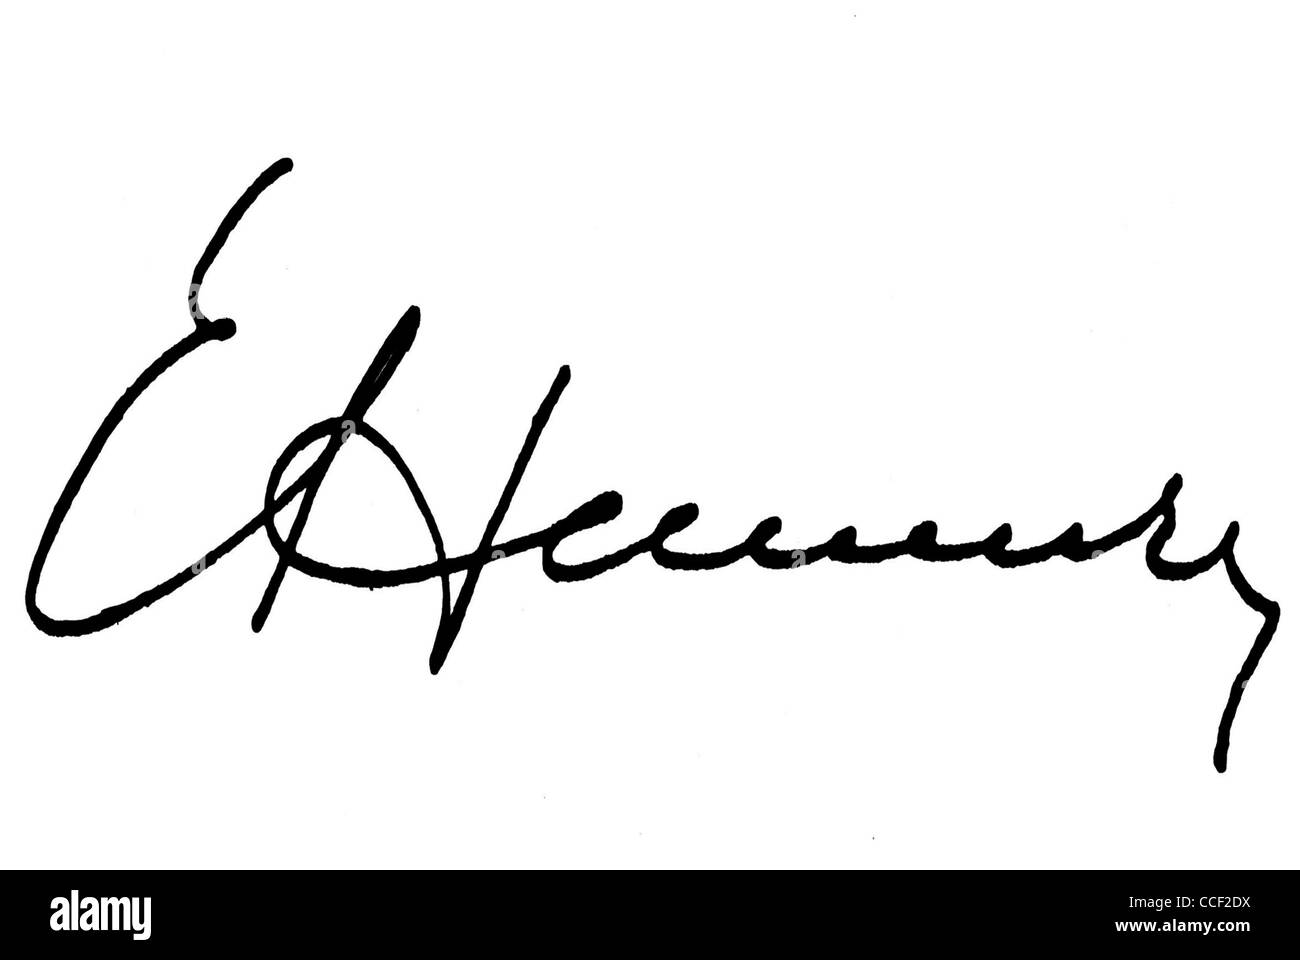 Signatur von Erich Honecker - Generalsekretär der SED und Vorsitzender des Staatsrates der DDR 1971-1989. Stockfoto